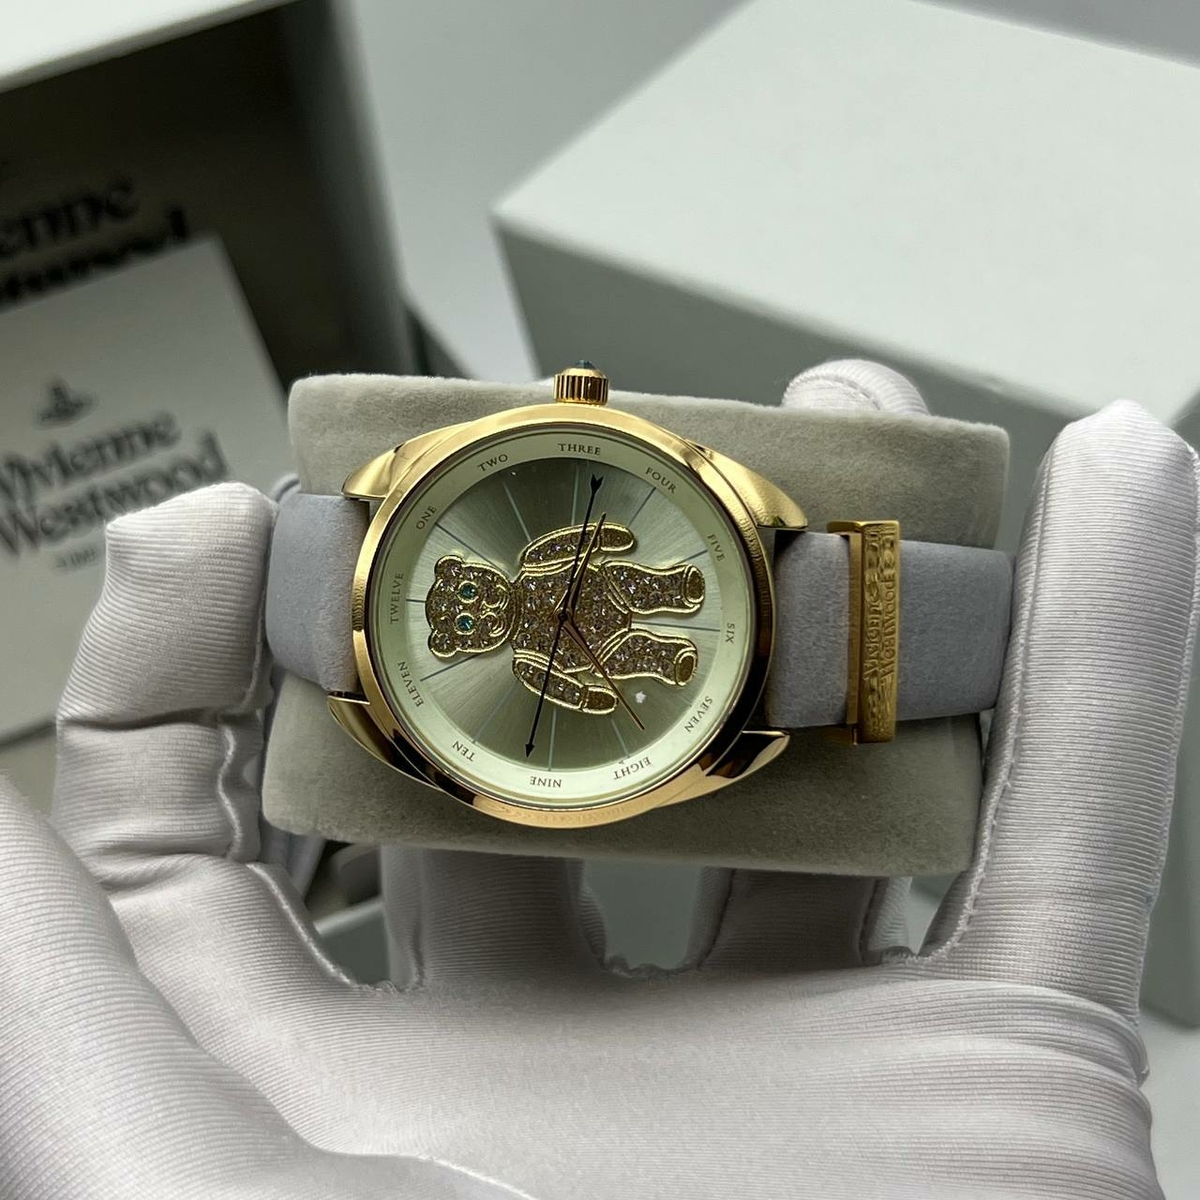 Vivienne Westwood часы #2 в «Globestyle» арт.367890BN